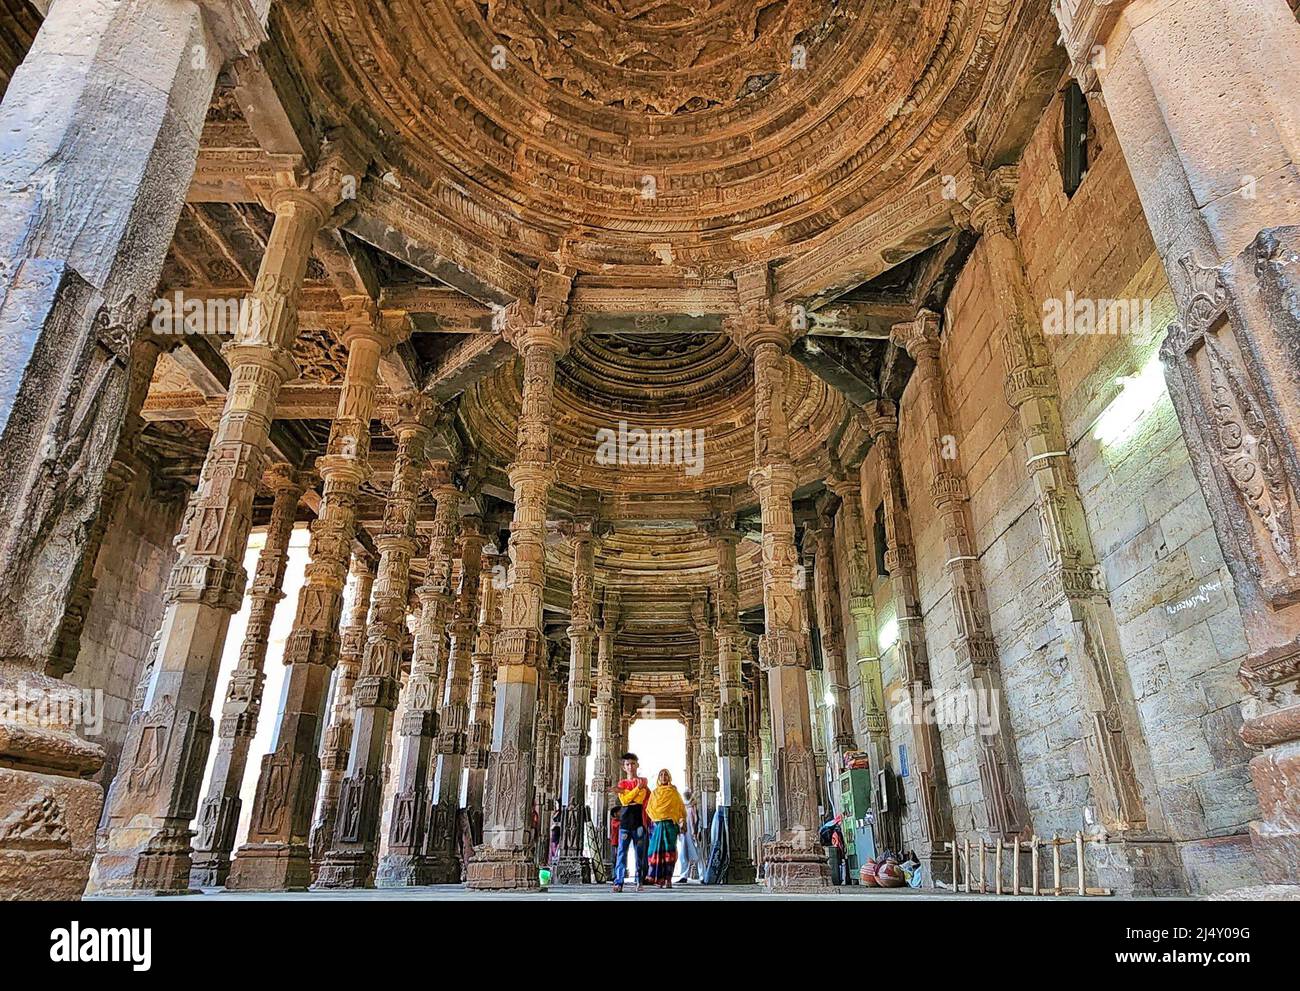 Ajmer, Rajasthan, India. 17th de Abr de 2022. Adhai Din Ka Jhonpra durante el día del patrimonio mundial. Adhai Din Ka Jhonpra (literalmente '2Â½ días') es una estructura grande e imponente en la ciudad de Ajmer en Rajasthan. Construida primero por Abu Bakr de Herat y de nuevo por Qutb-ud-Din-Aibak en 1192 EC, la mezquita es un ejemplo de arquitectura islámica temprana. La estructura fue completada en 1199 CE y fue ampliada por Iltutmish de Delhi en 1213 CE. Un ejemplo temprano de la arquitectura islámica, la mayor parte del edificio fue construido por albañiles hindúes, bajo la supervisión de administradores afganos. La mezquita conservada Foto de stock